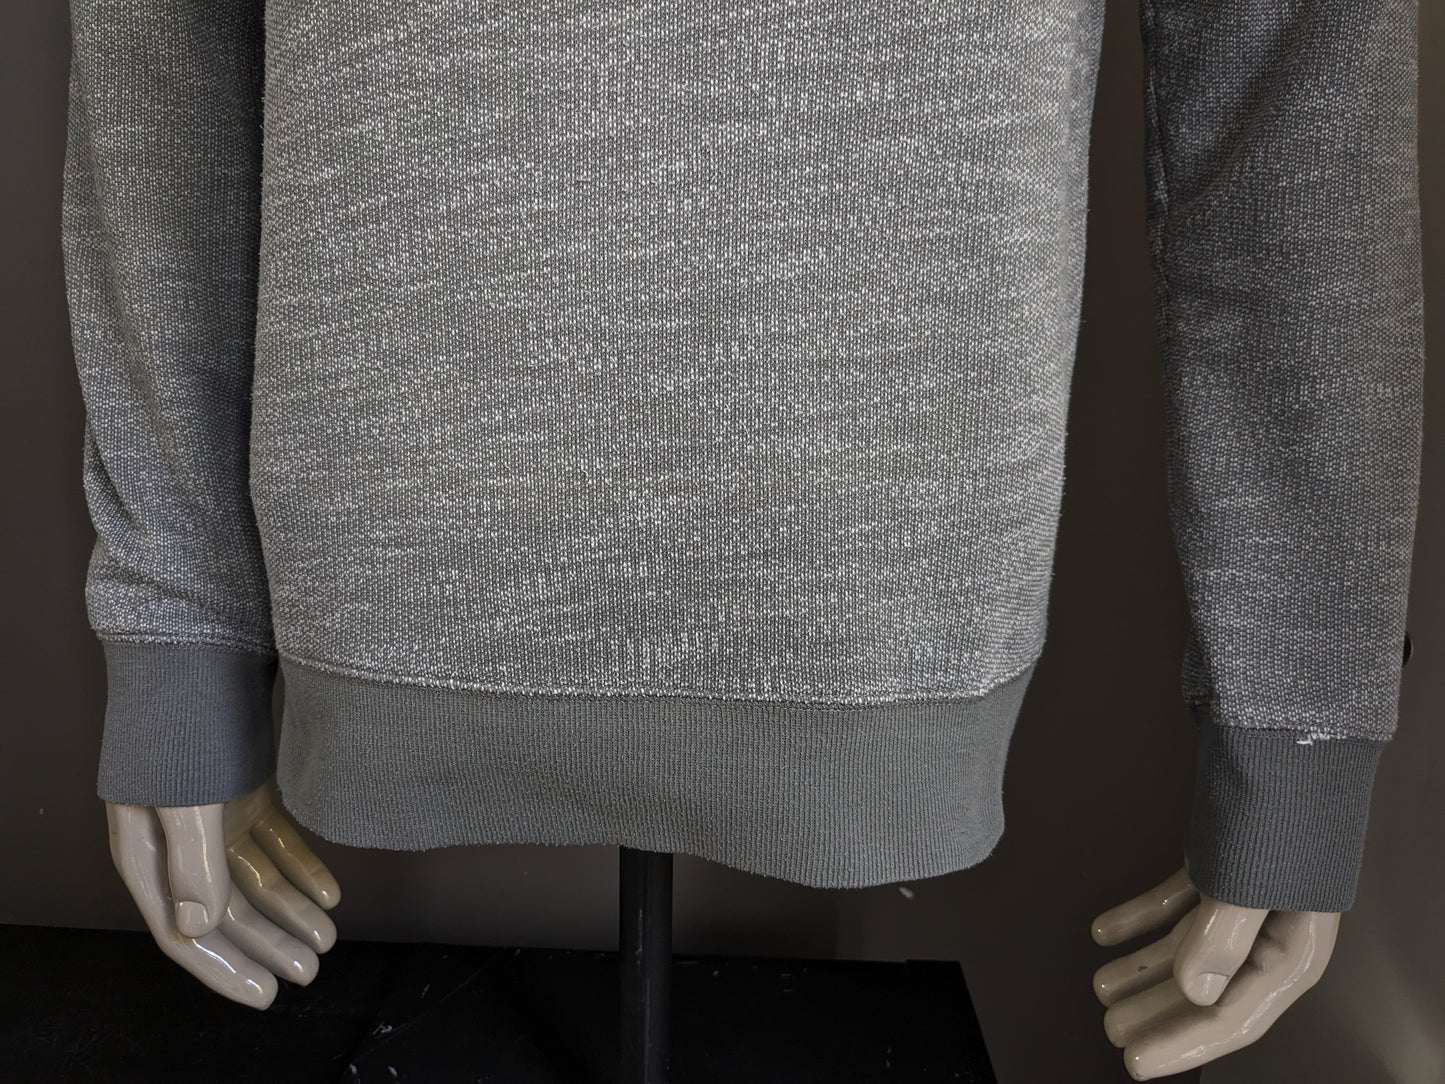 Suéter de espíritu con cuello de tortuga deportivo. Blanco gris mezclado. Talla L.